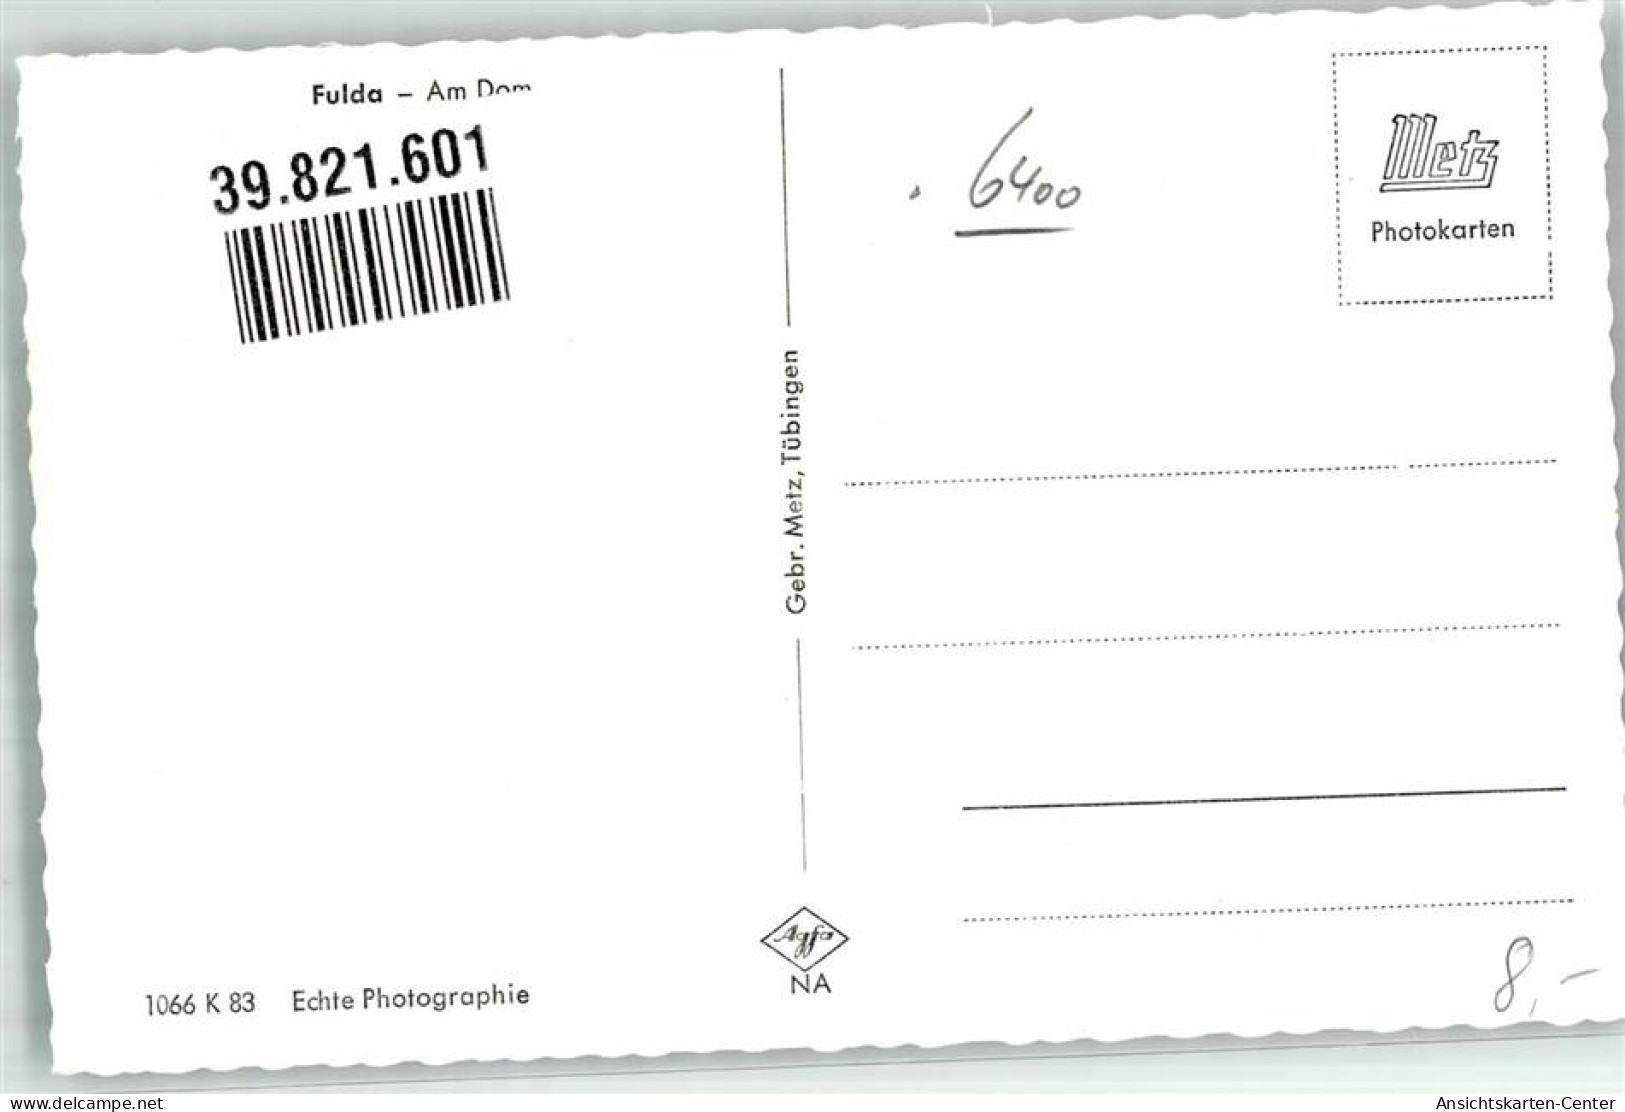 39821601 - Fulda - Fulda